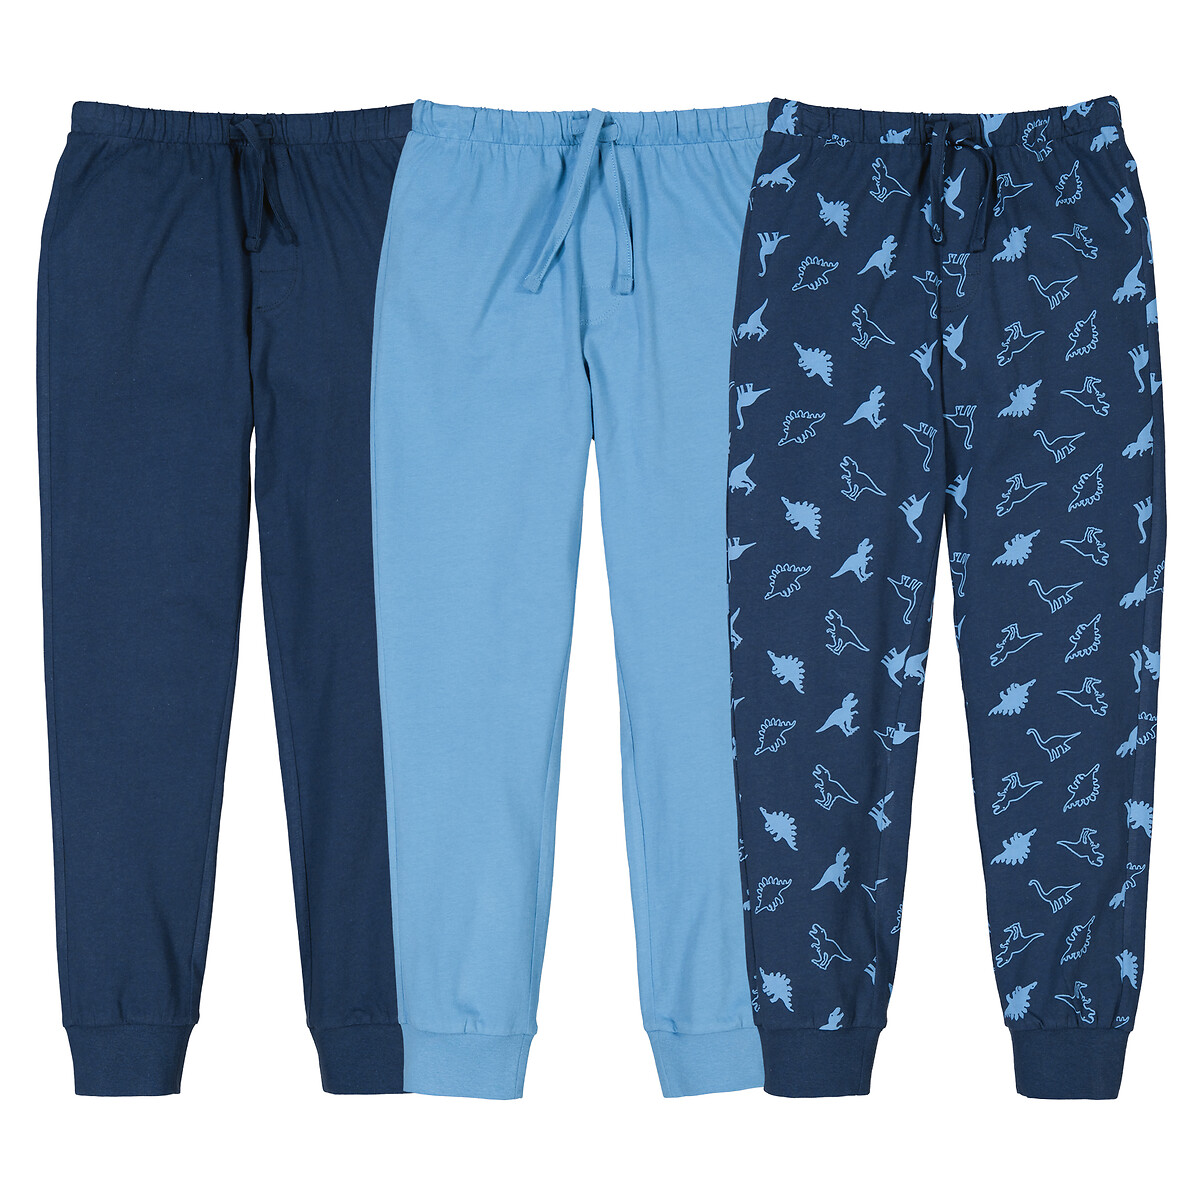 Комплект из трех пижамных брюк La Redoute 3 года - 94 см синий комплект из двух пижам la redoute 3 года 94 см синий